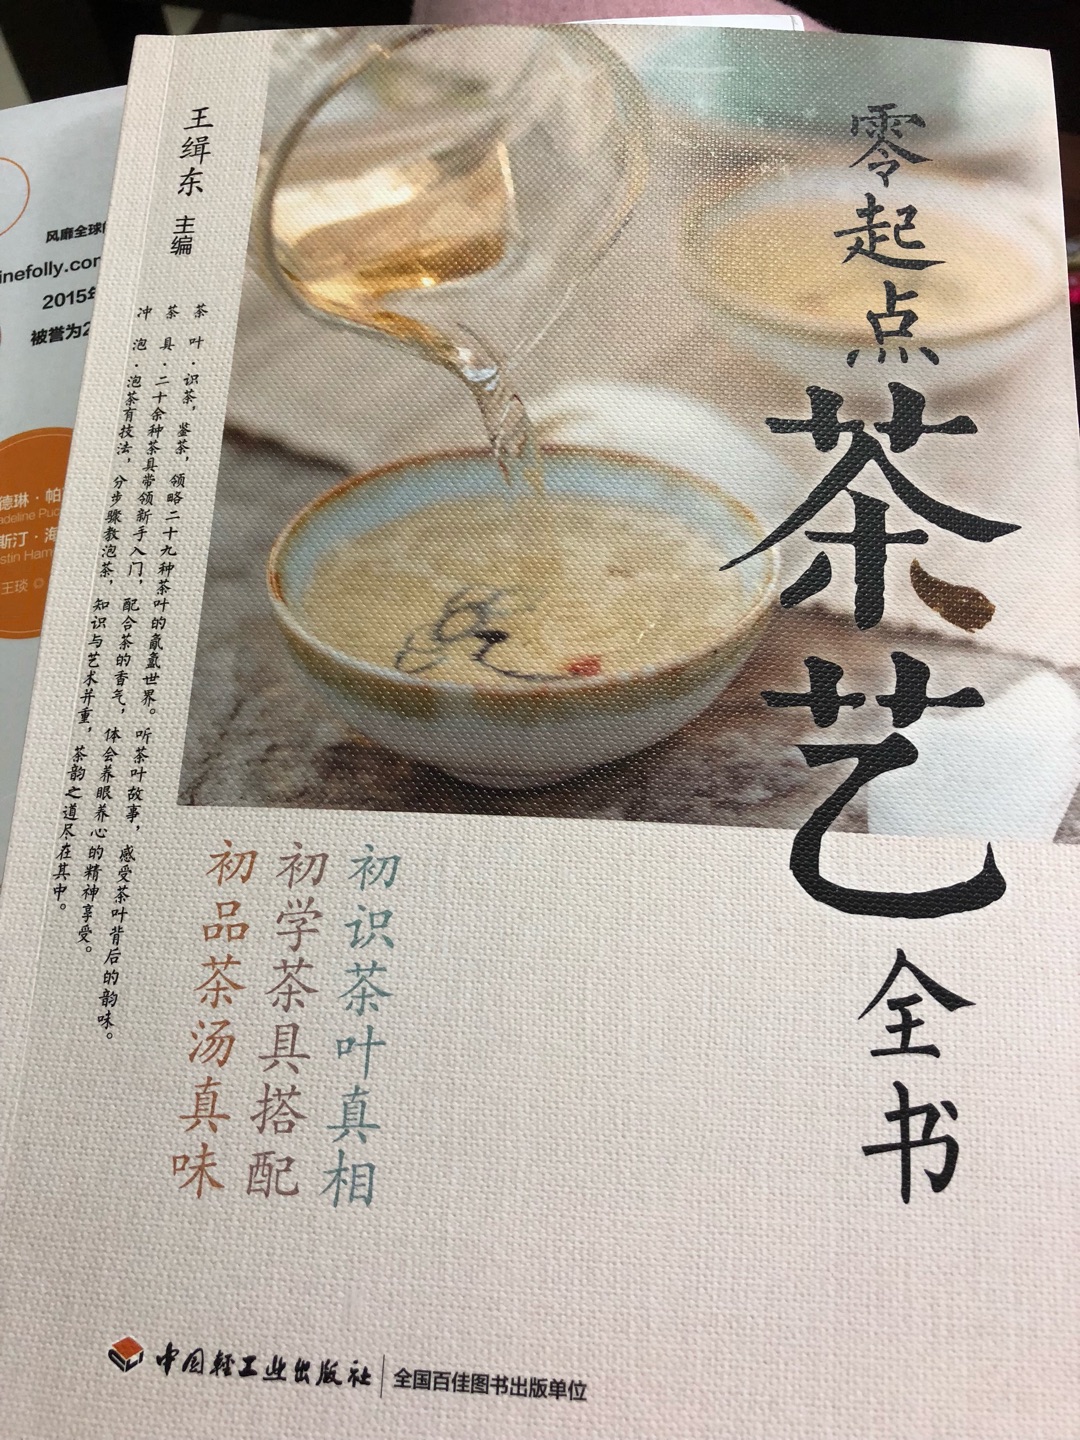 这次买了很多书，茶艺，葡萄酒文化都是自己想学习的，这本书简单系统梳理了中国茶艺